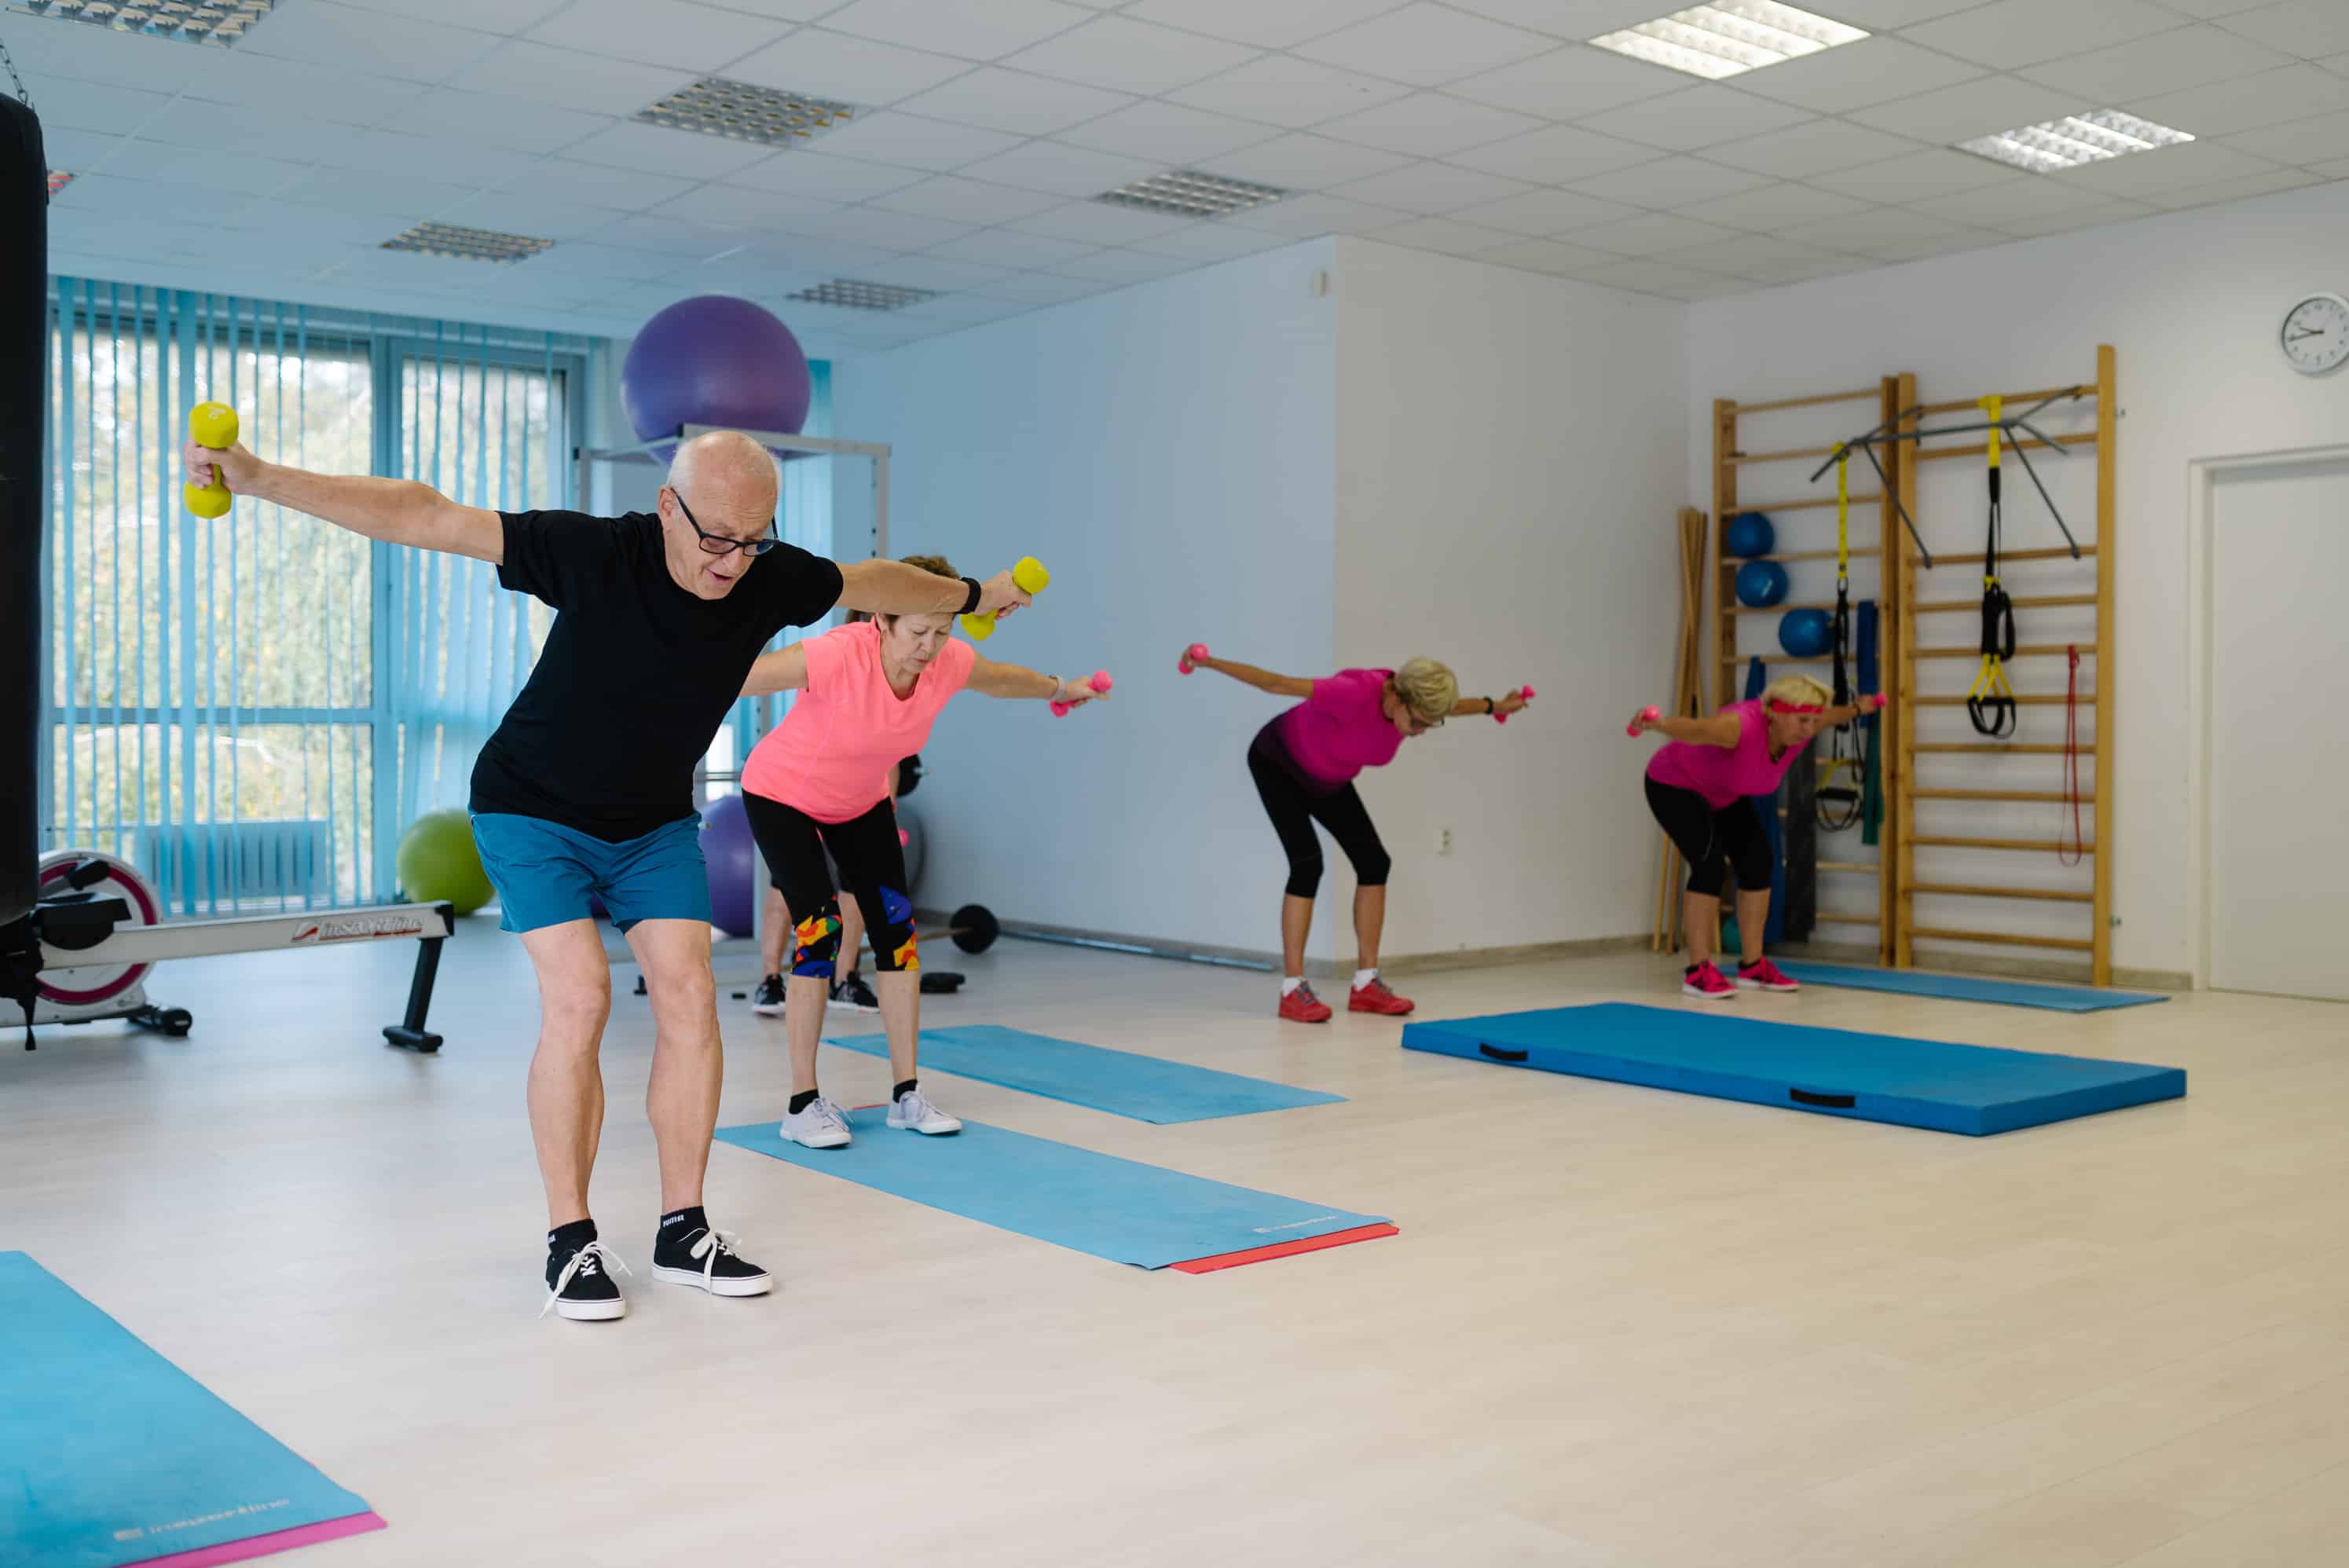 Rozhovor s trénerom Petrom Jurinom o tom, prečo je cvičenie dôležité v každom veku (+ 5 skvelých cvikov, vďaka ktorým sa budete cítiť lepšie)